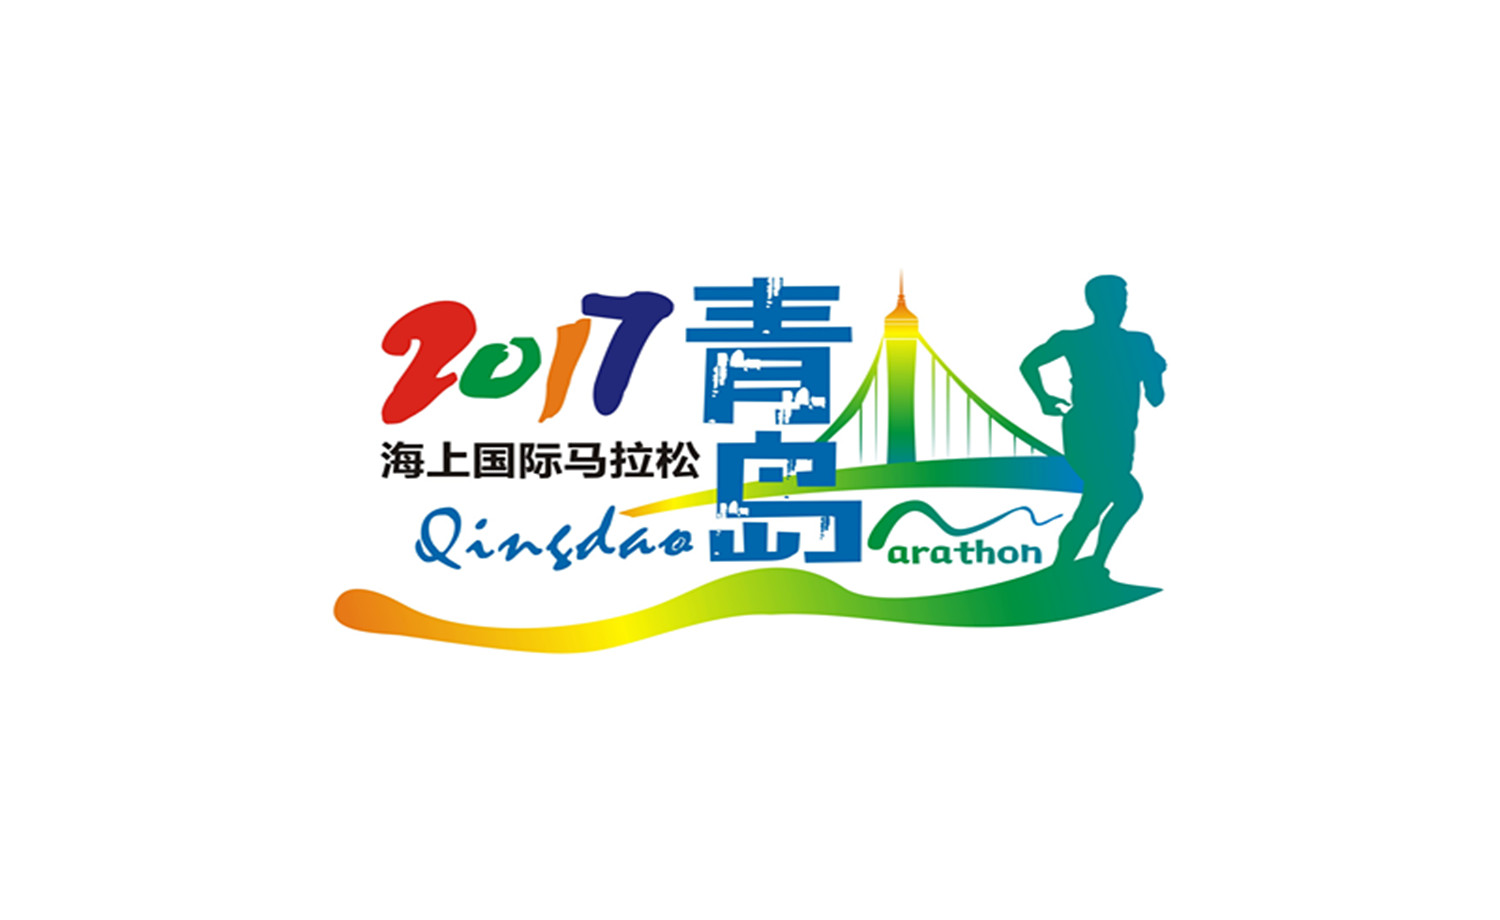 2017青岛海上国际马拉松